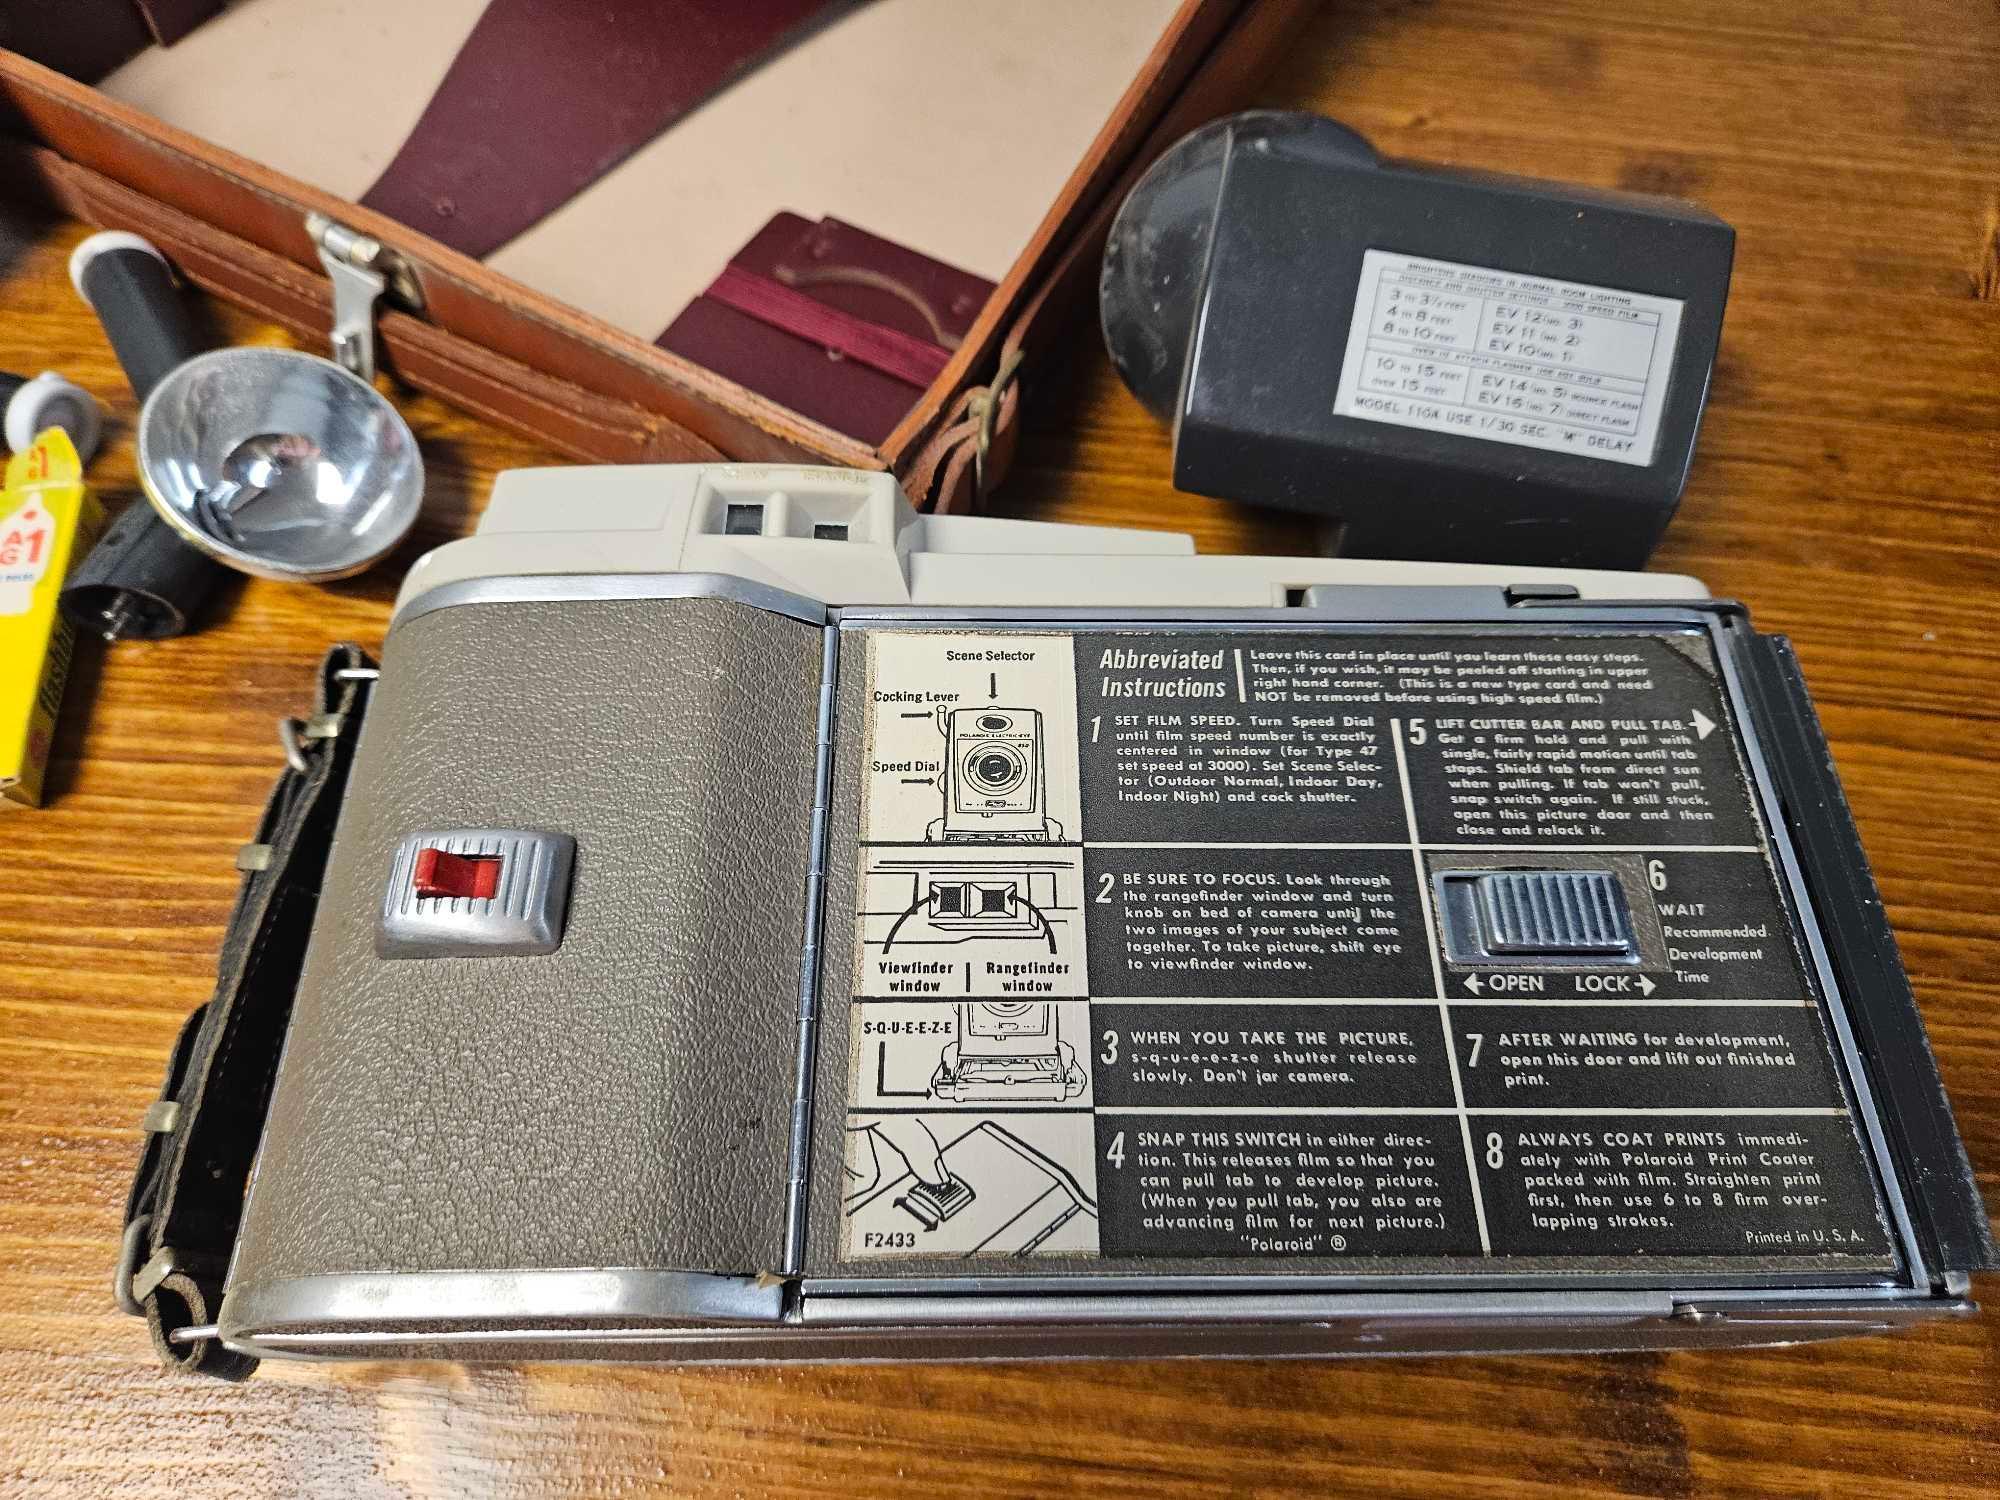 Vintage Polaroid Camera In Top Grain Cow Hide Case